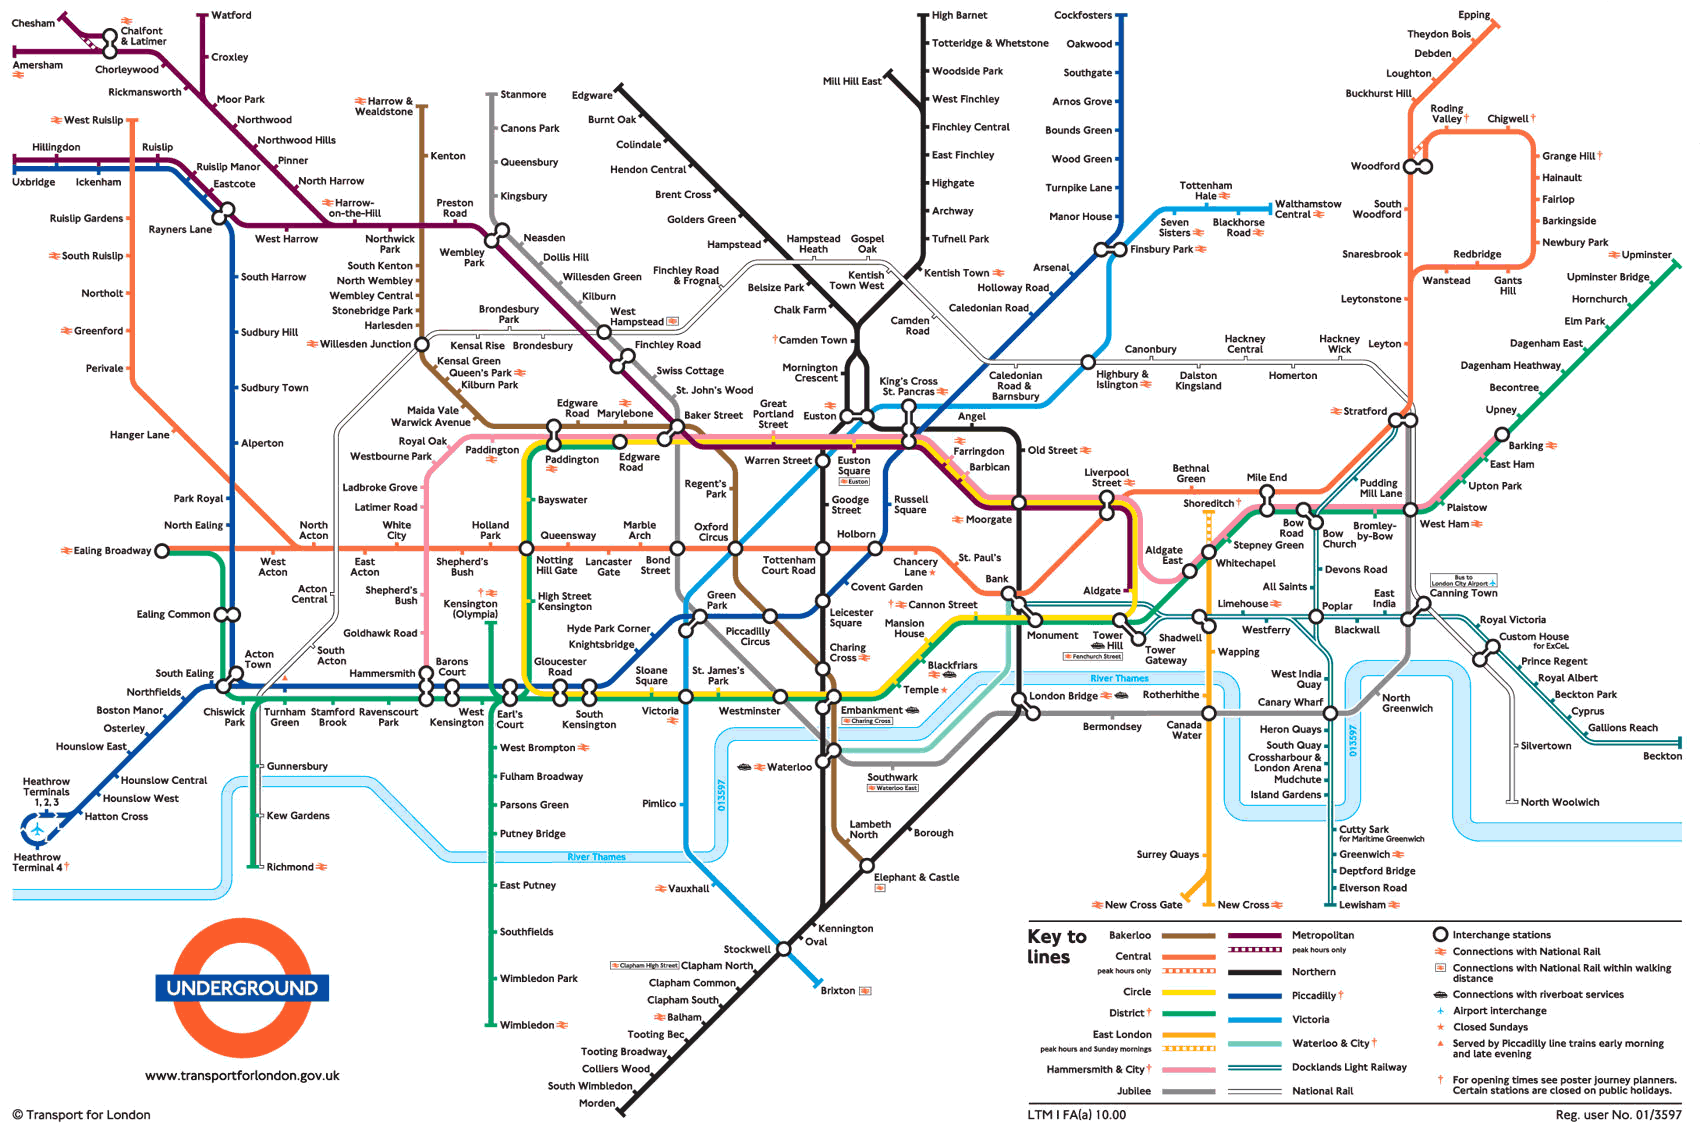 Metro di Londra: guida completa e aggiornata per spostarti senza problemi